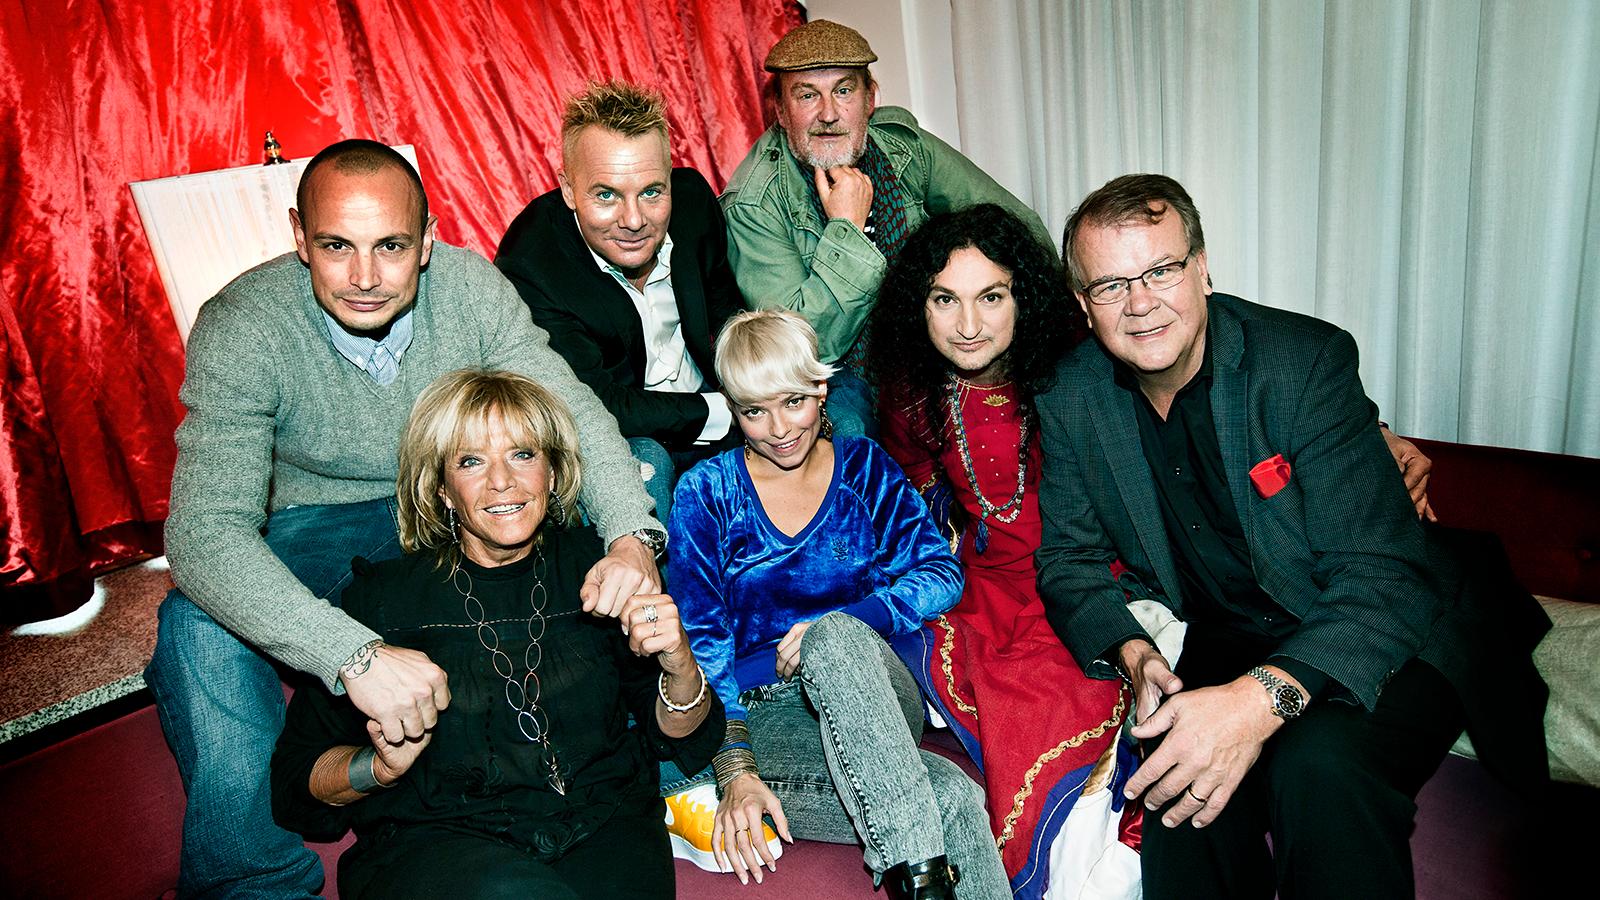 Petra Marklund var med i den första säsongen av ”Så mycket bättre” 2010, då ihop med Petter, Barbro ”Lill-Babs” Svensson, Christer Sandelin, Plura Jonsson, Thomas Di Leva och Lasse Berghagen.